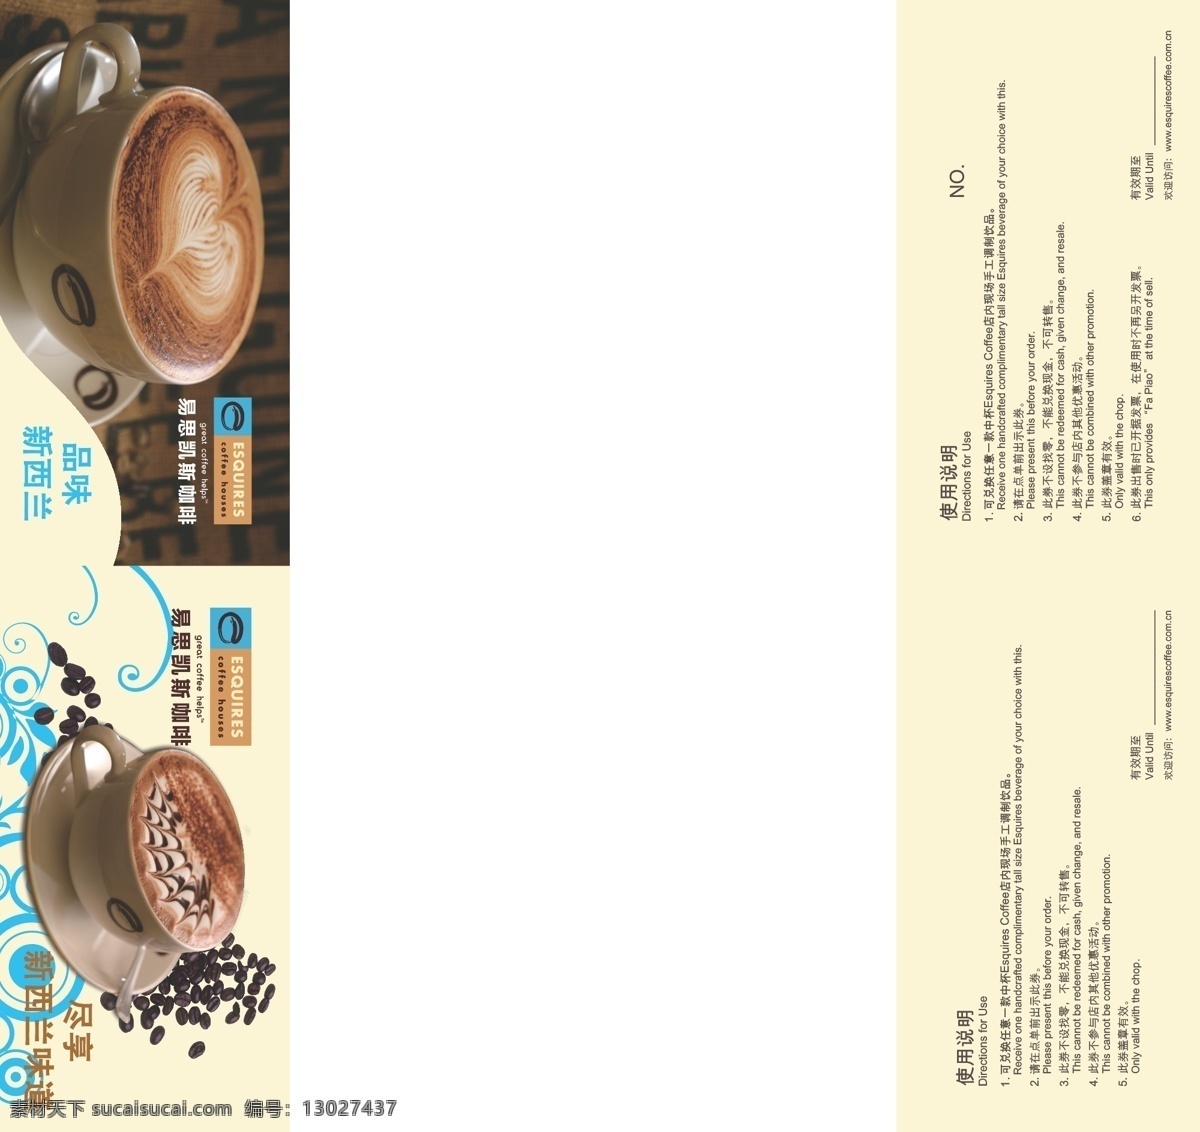 餐厅 代金券 咖啡 咖啡豆 卡片 礼品券 体验券 体验 券 矢量 模板下载 卡布其诺 易思凯斯 小卡 矢量图 建筑家居